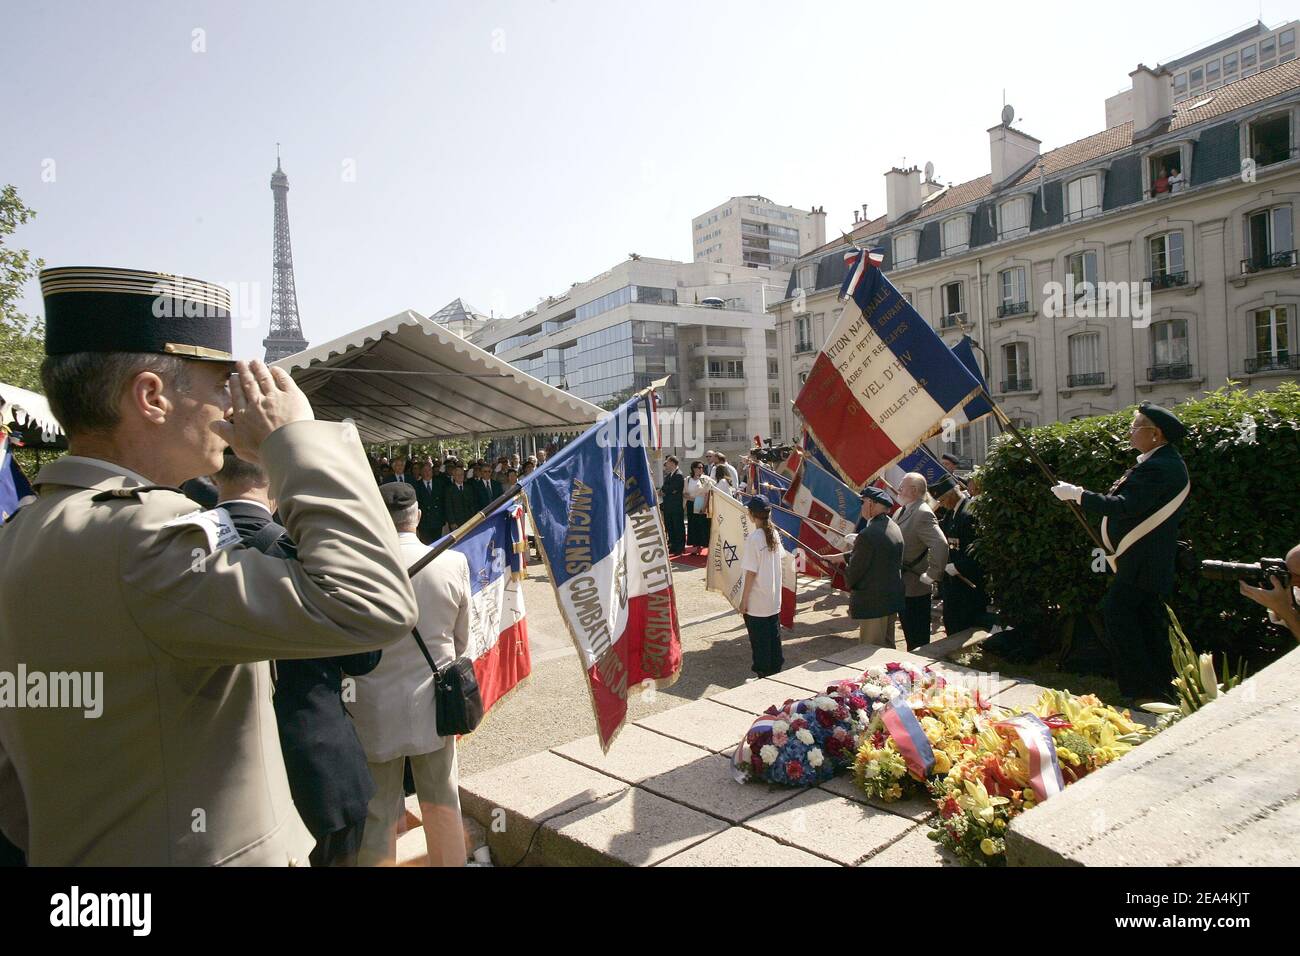 Cérémonies marquant le 63e anniversaire d'un régime de Vichy, le tour des Juifs, à Paris, le 17 juillet 2005. Villepin a déclaré que son gouvernement travaillerait sans relâche à la lutte contre l'antisémitisme et tous les crimes haineux. Photo de Mousse/ABACAPRESS.COM Banque D'Images